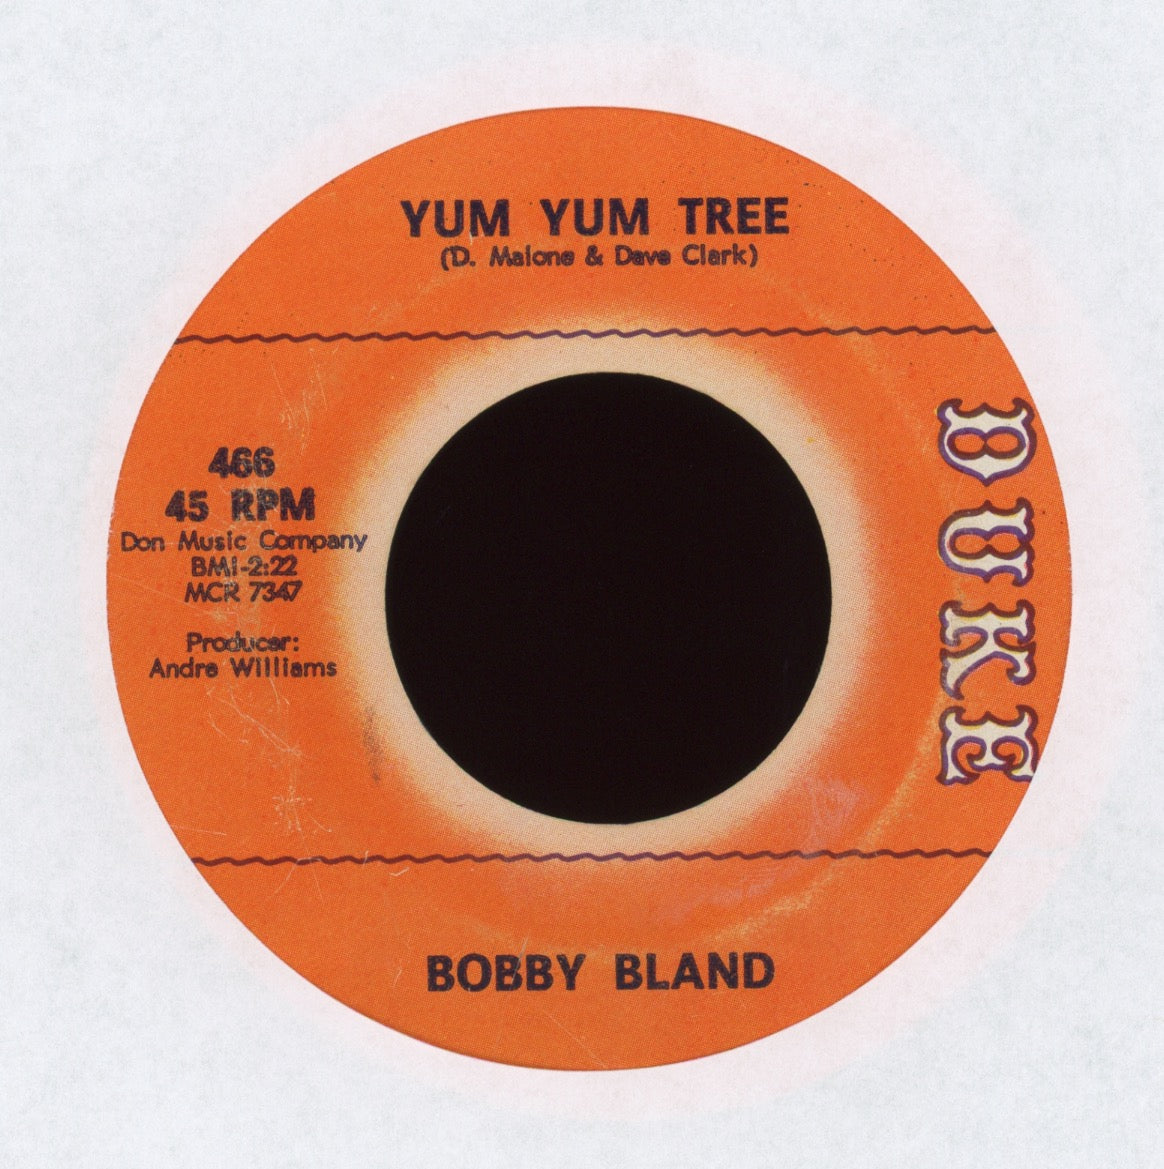 Bobby Bland - Yum Yum Tree on Duke